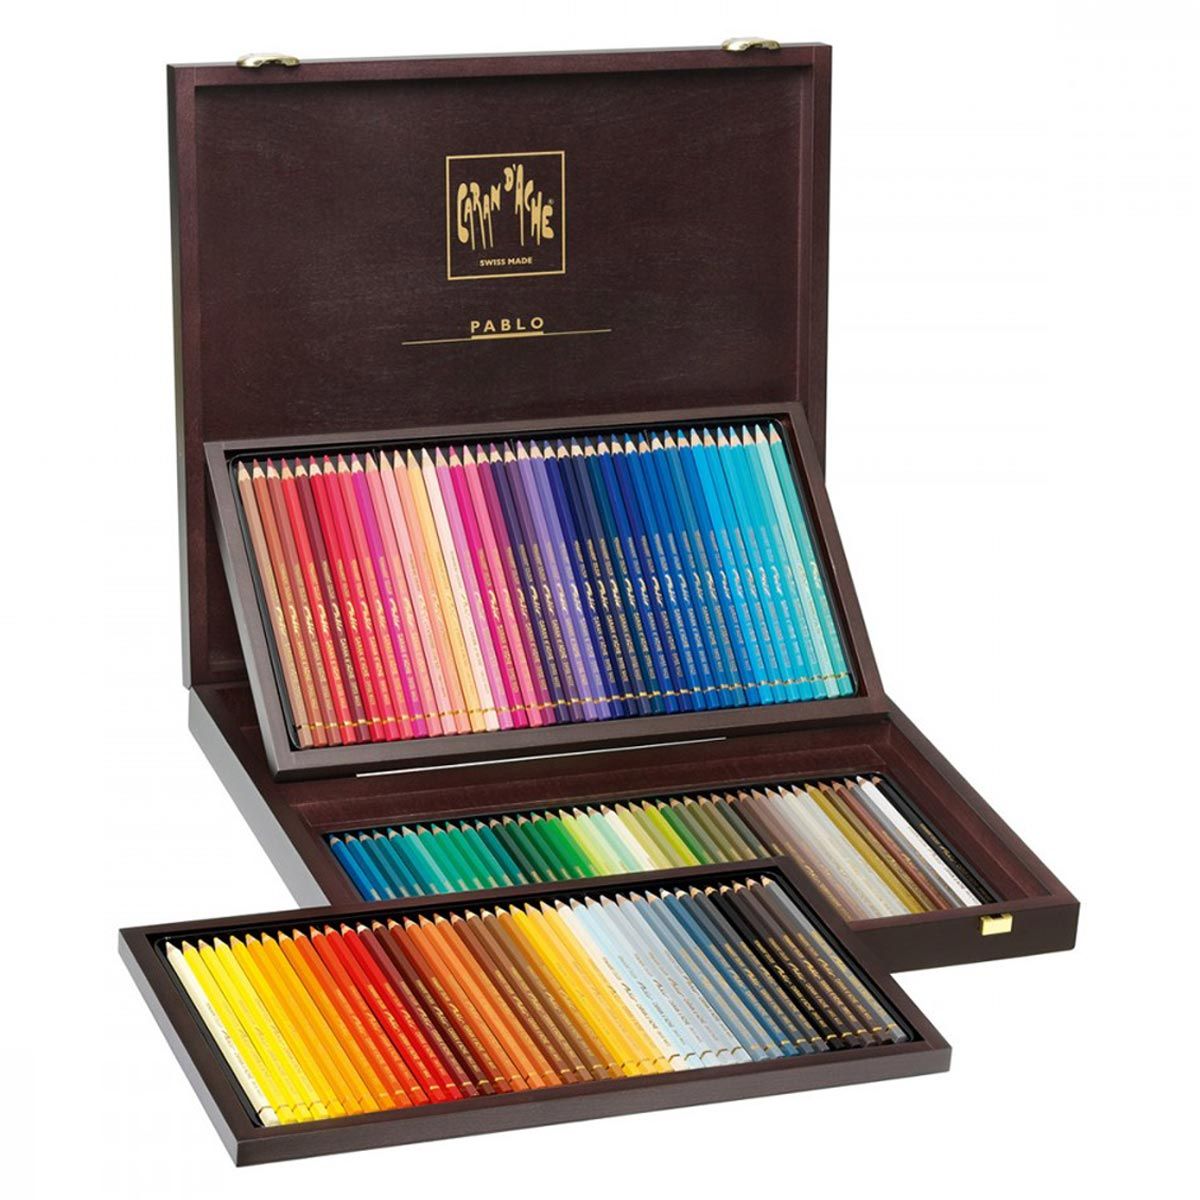 Caran d’Ache Pablo Coloured Pencil Wooden Box Set of 120